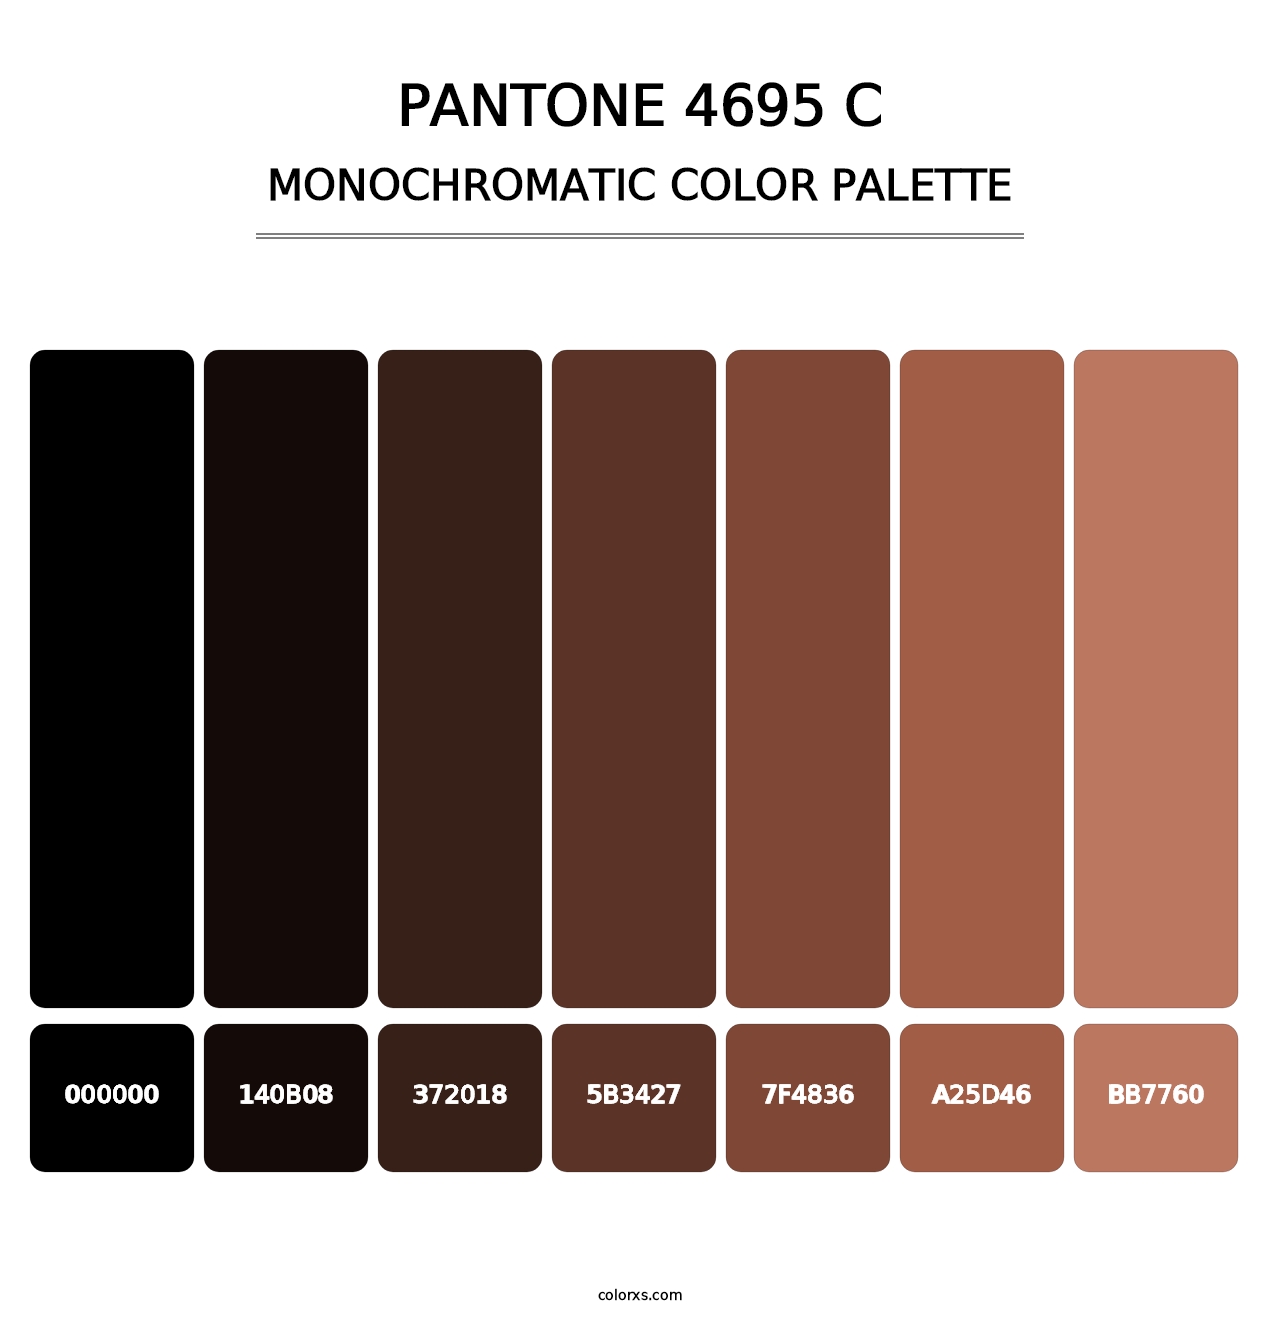 PANTONE 4695 C - Monochromatic Color Palette